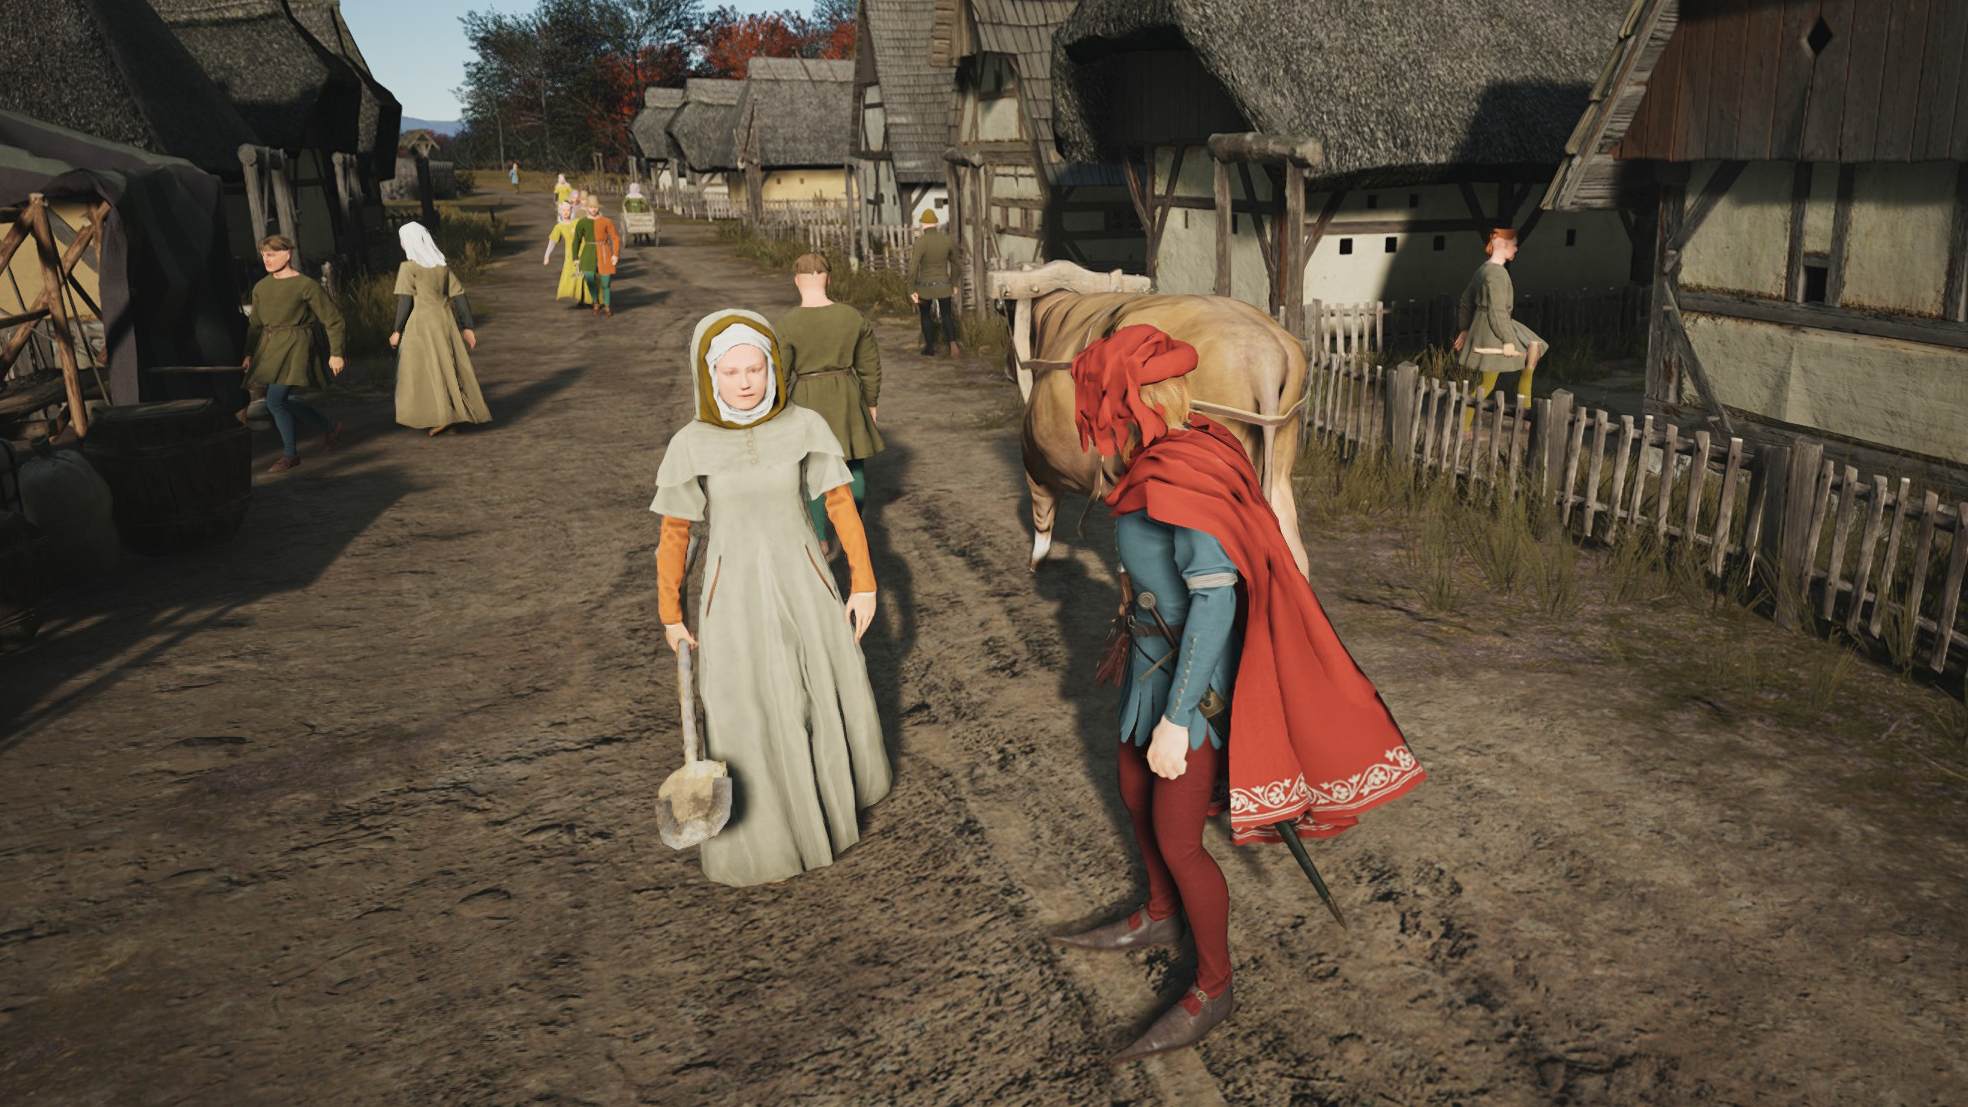 Medieval peasants